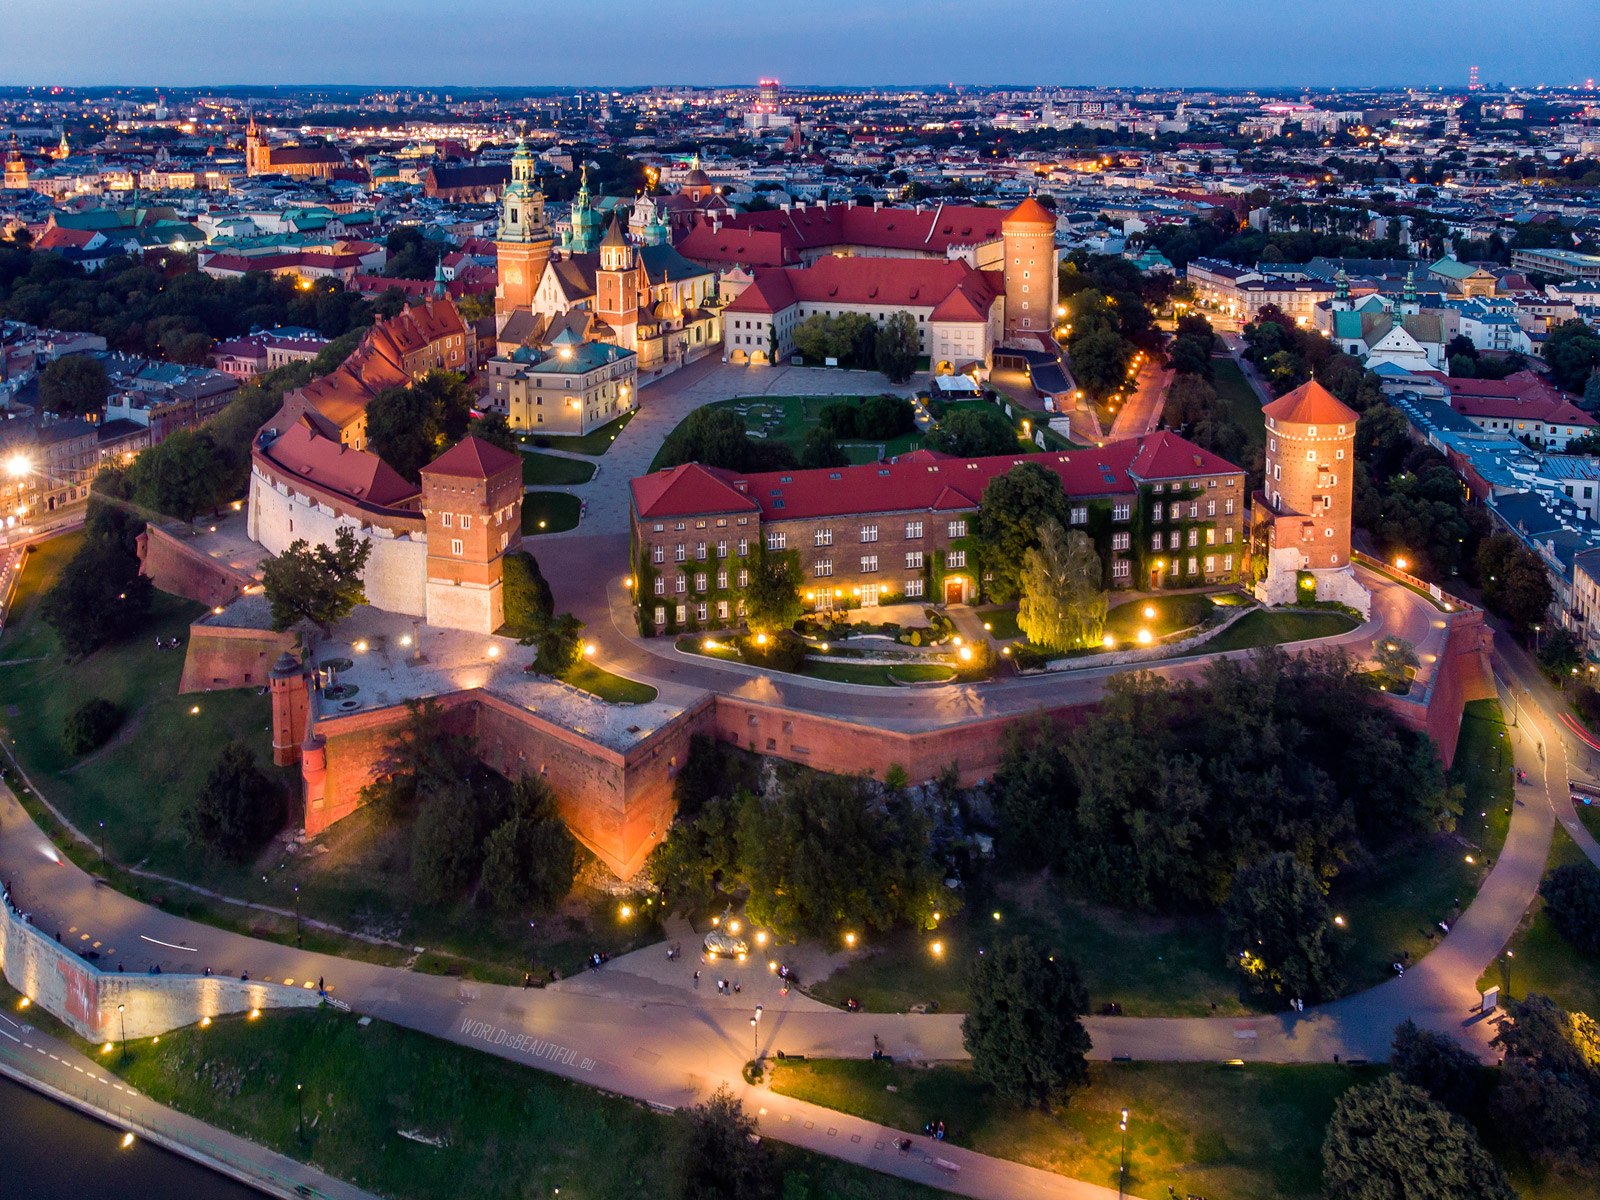 Wawel Castle in Cracow